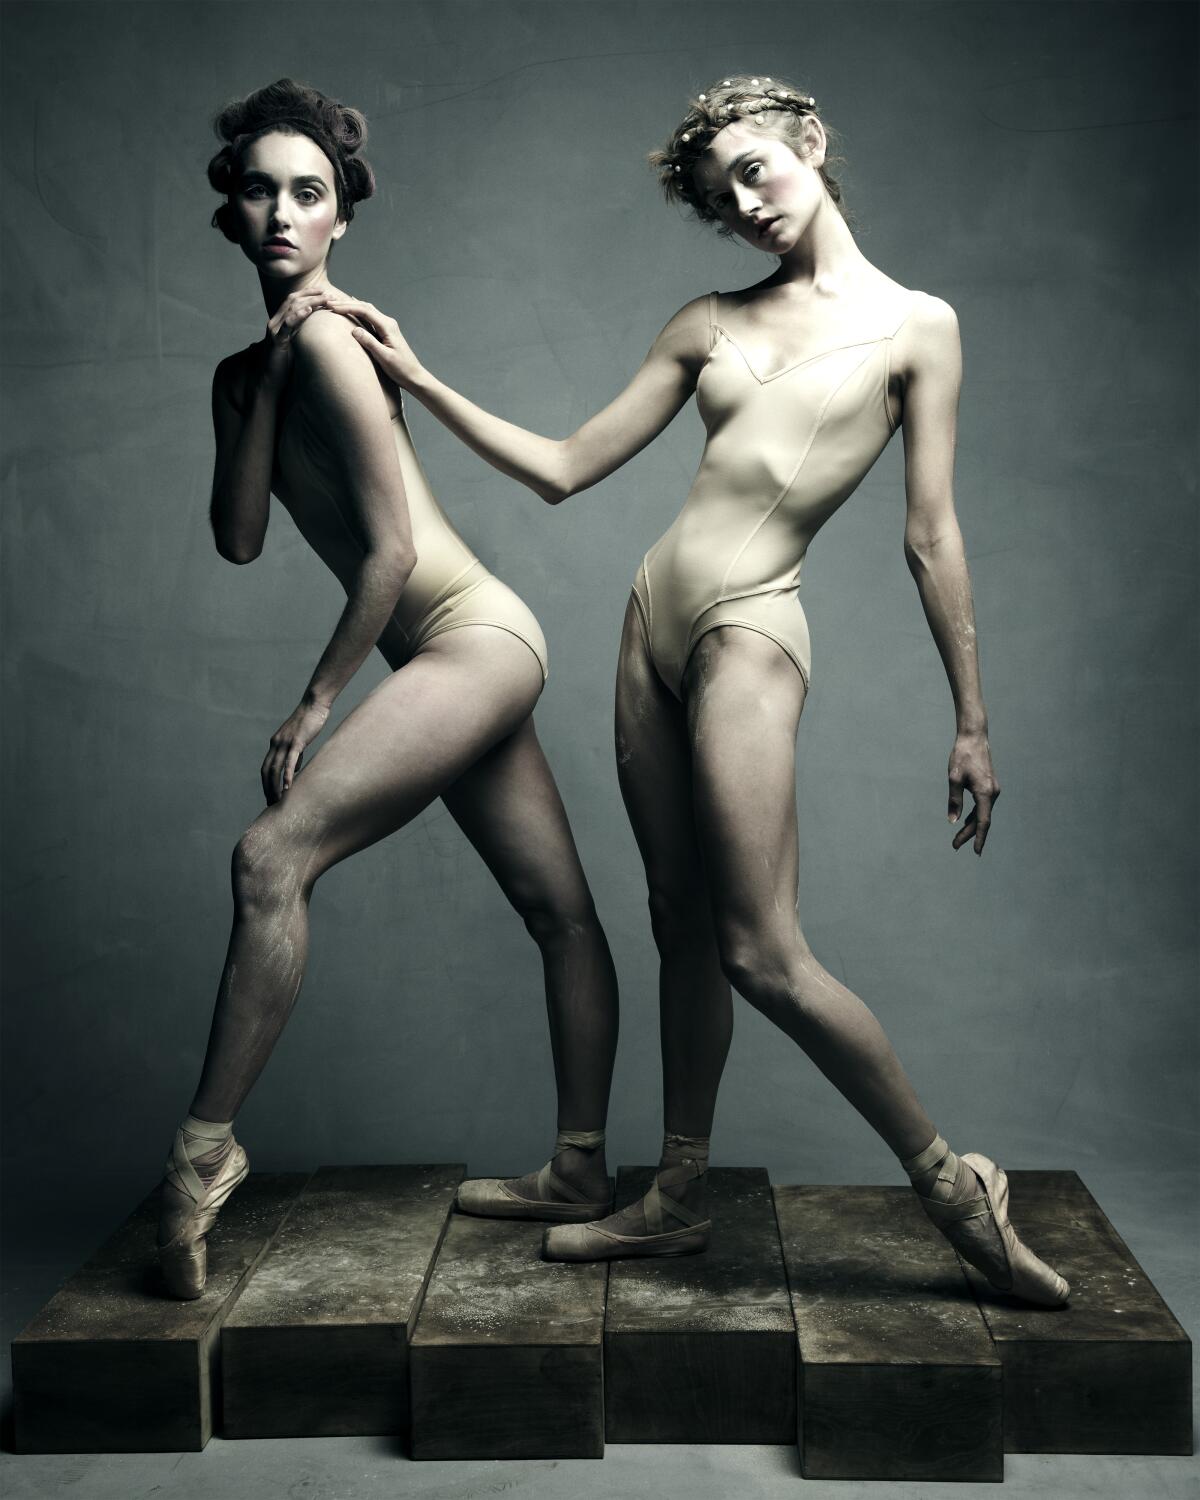 Two ballet dancers in nude leotards.